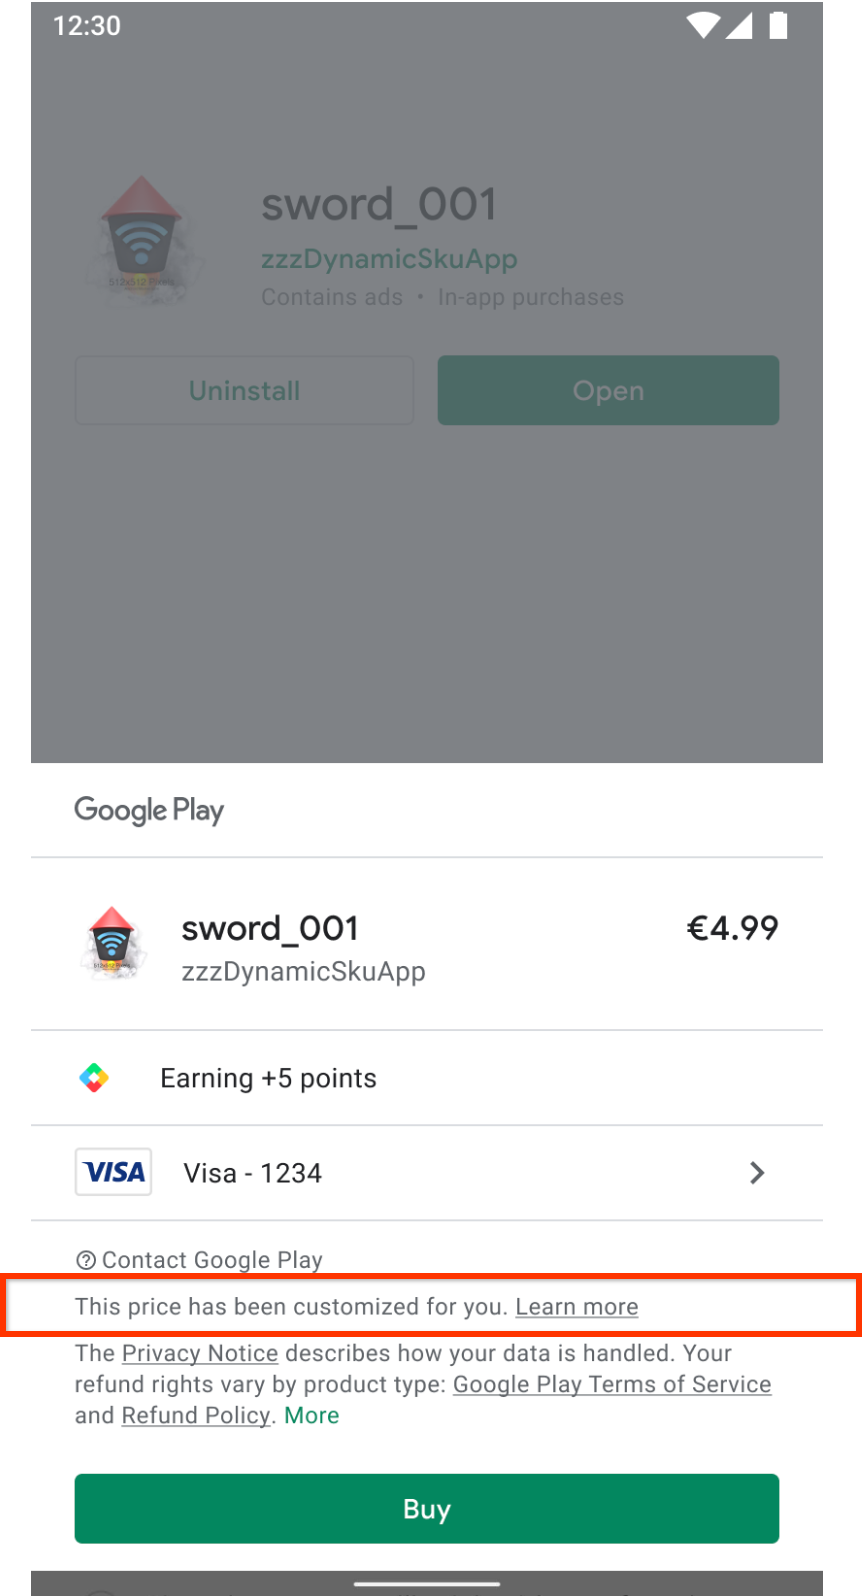 A tela de compra do Google Play indica que o preço foi personalizado para o usuário.